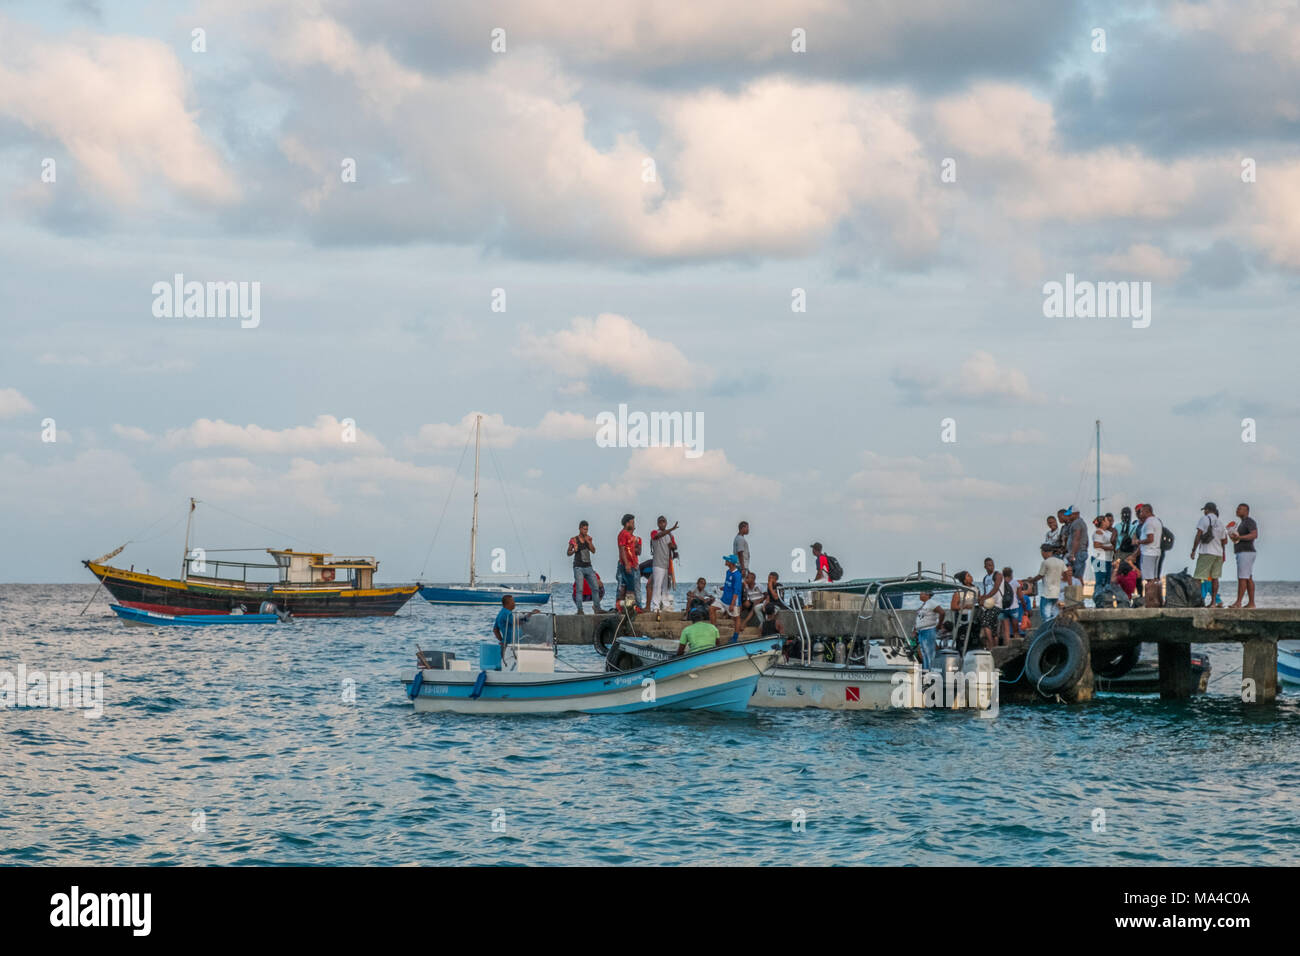 Capurgana, Colombia - february 2018: Boats and people on harbor of Capurgana, Colombia near the border of Panama. Stock Photo